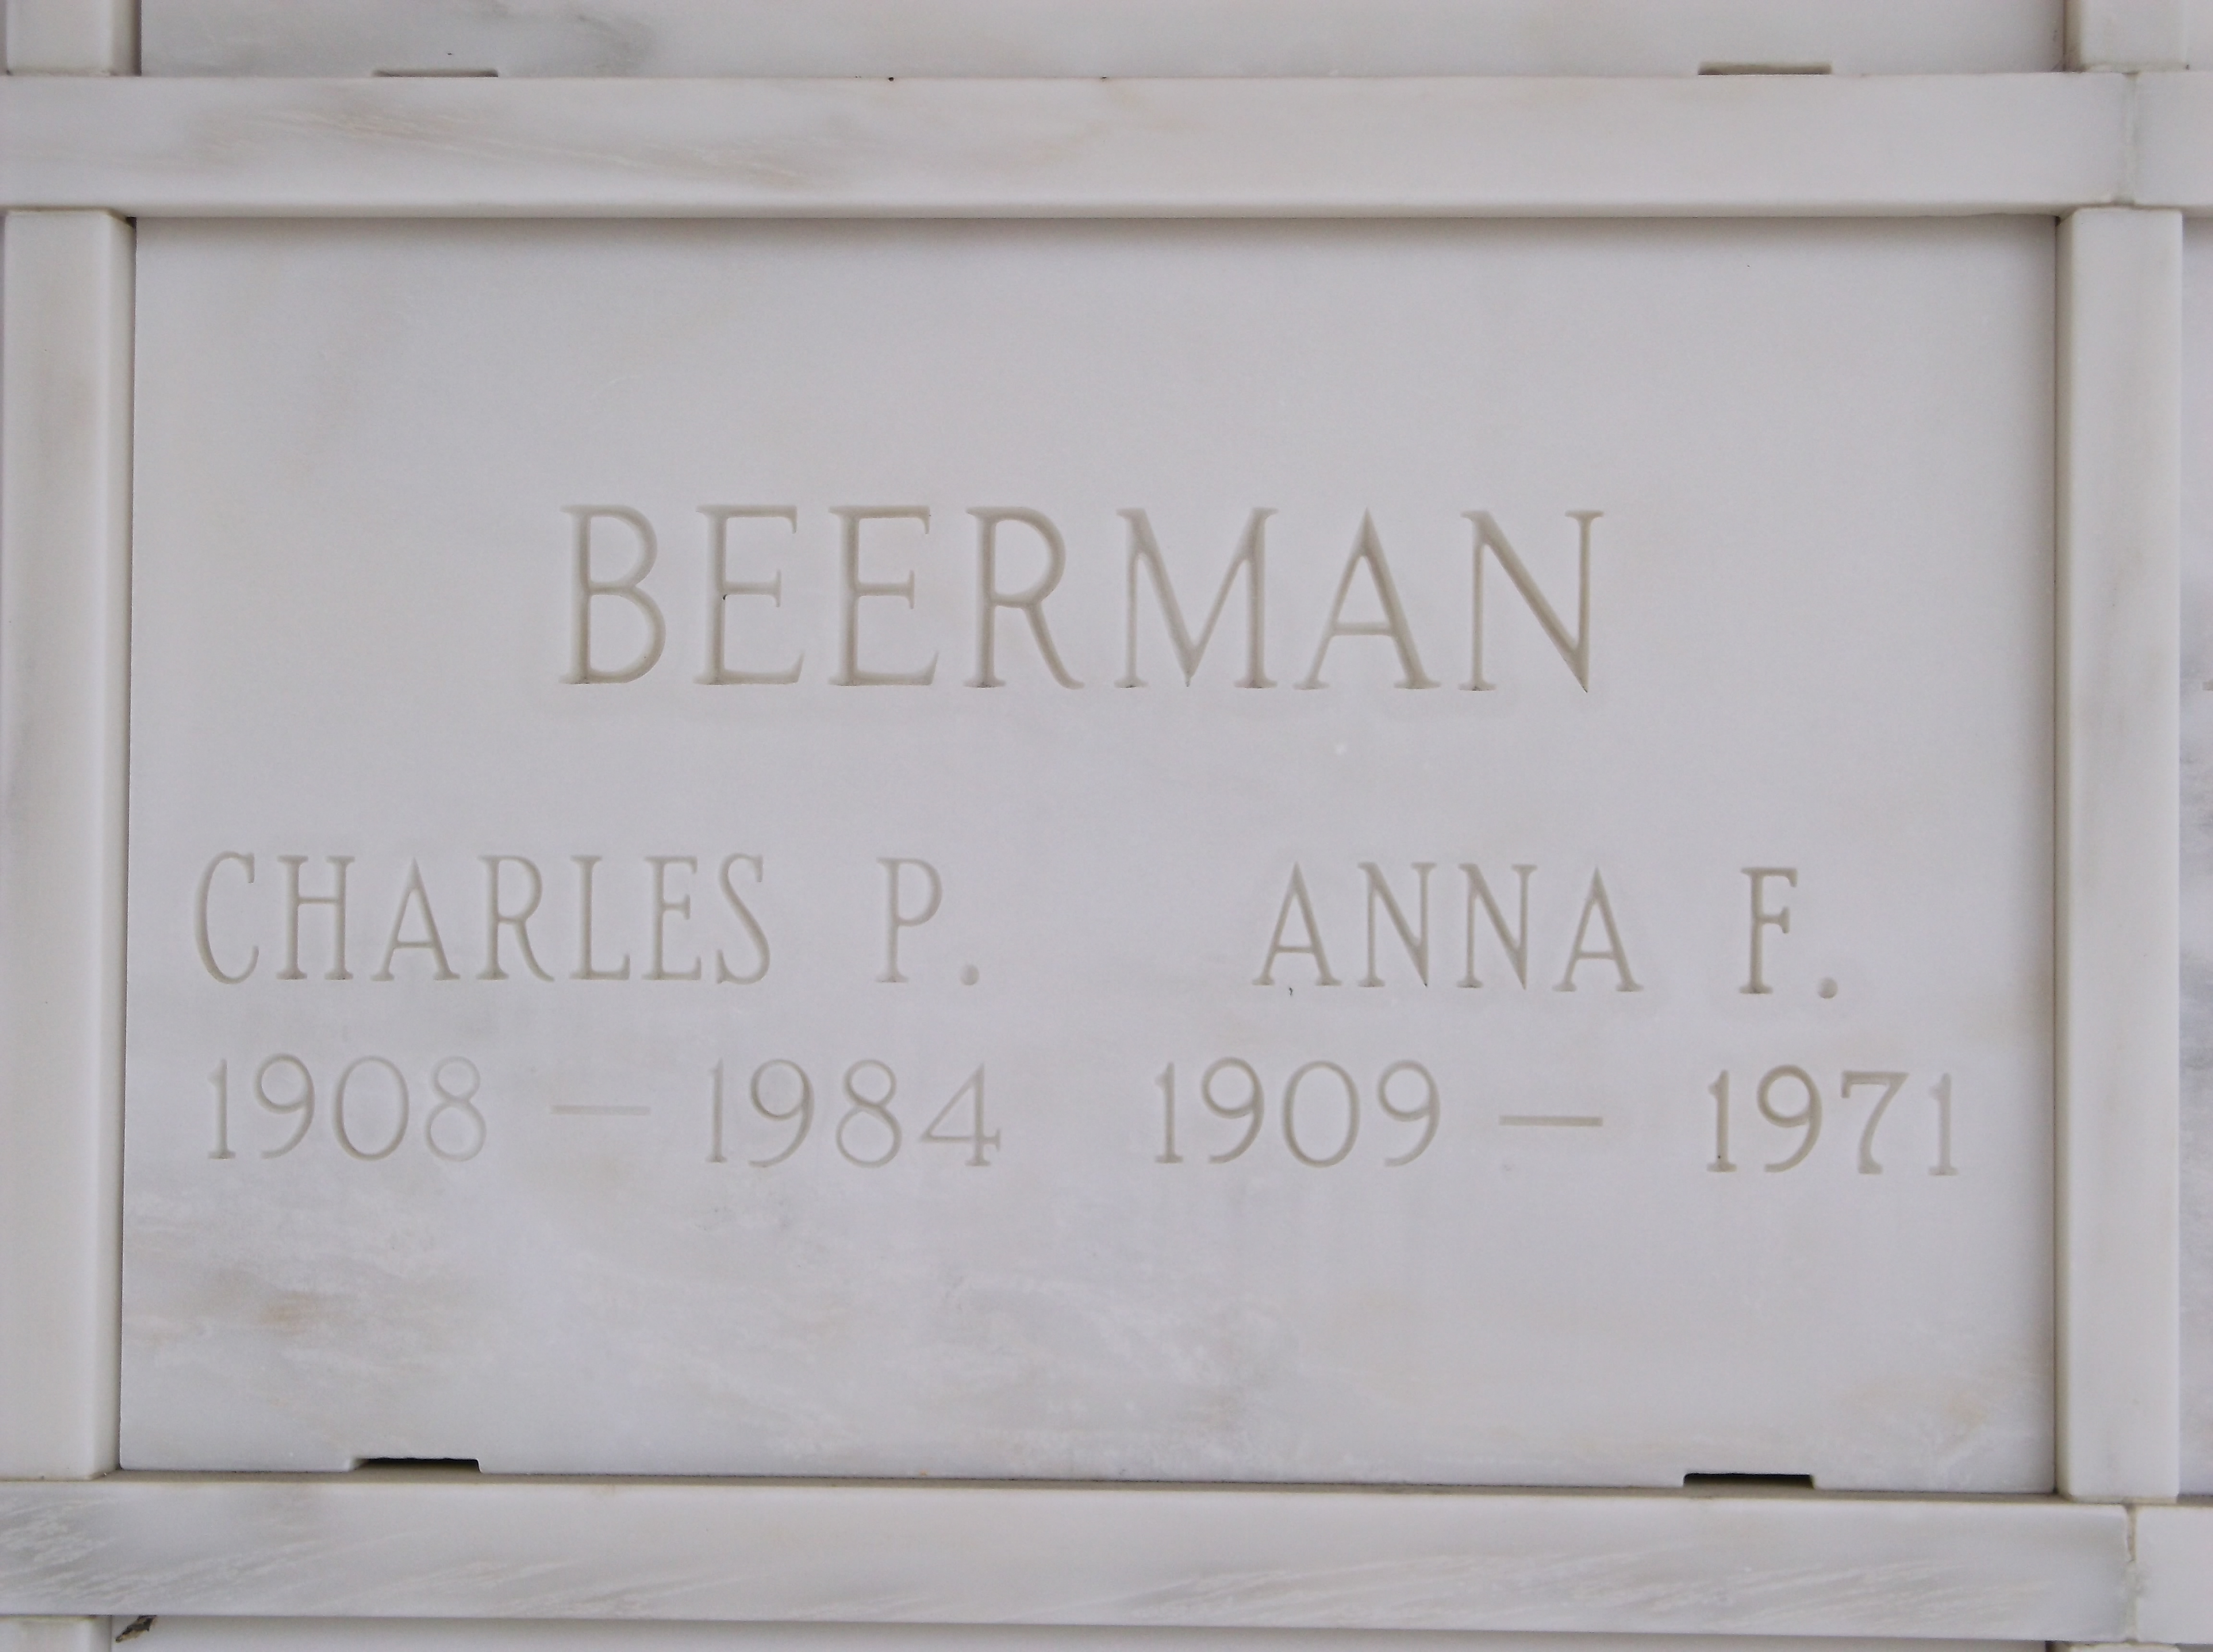 Charles P Beerman